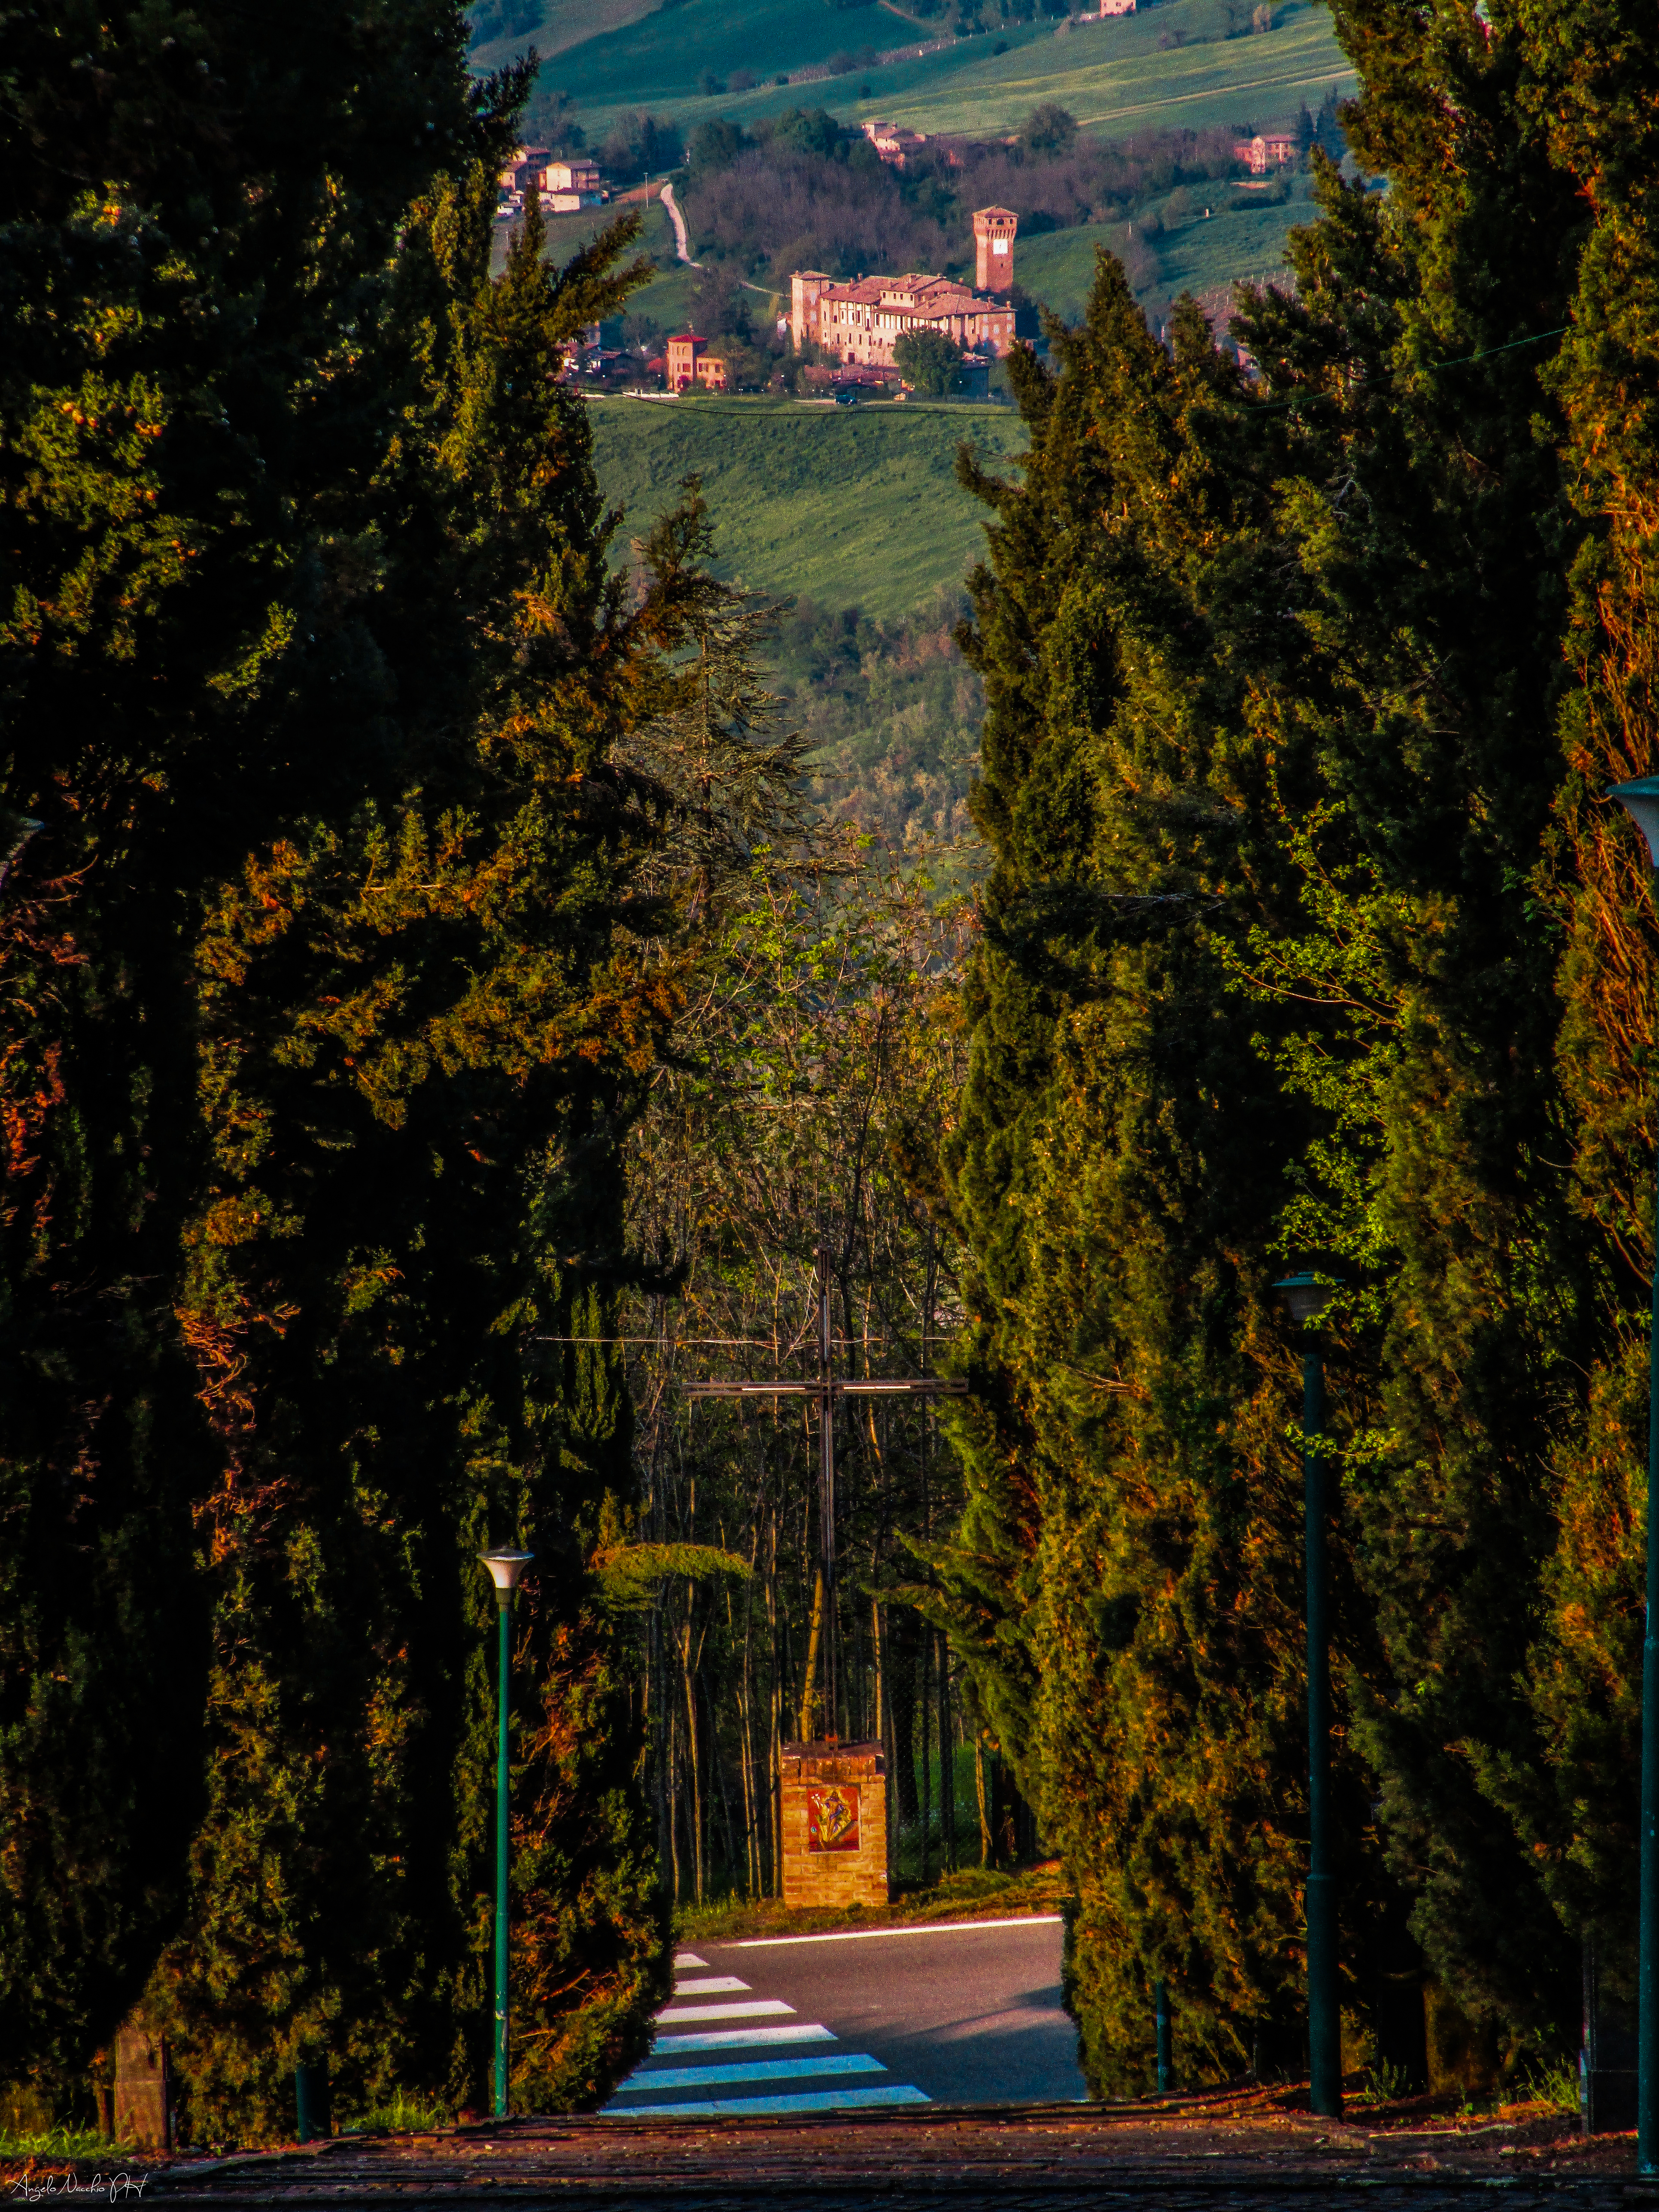 foto: https://upload.wikimedia.org/wikipedia/commons/1/14/Dal_Santuario_di_Puianello_al_Castello_di_Levizzano_Rangone.jpg